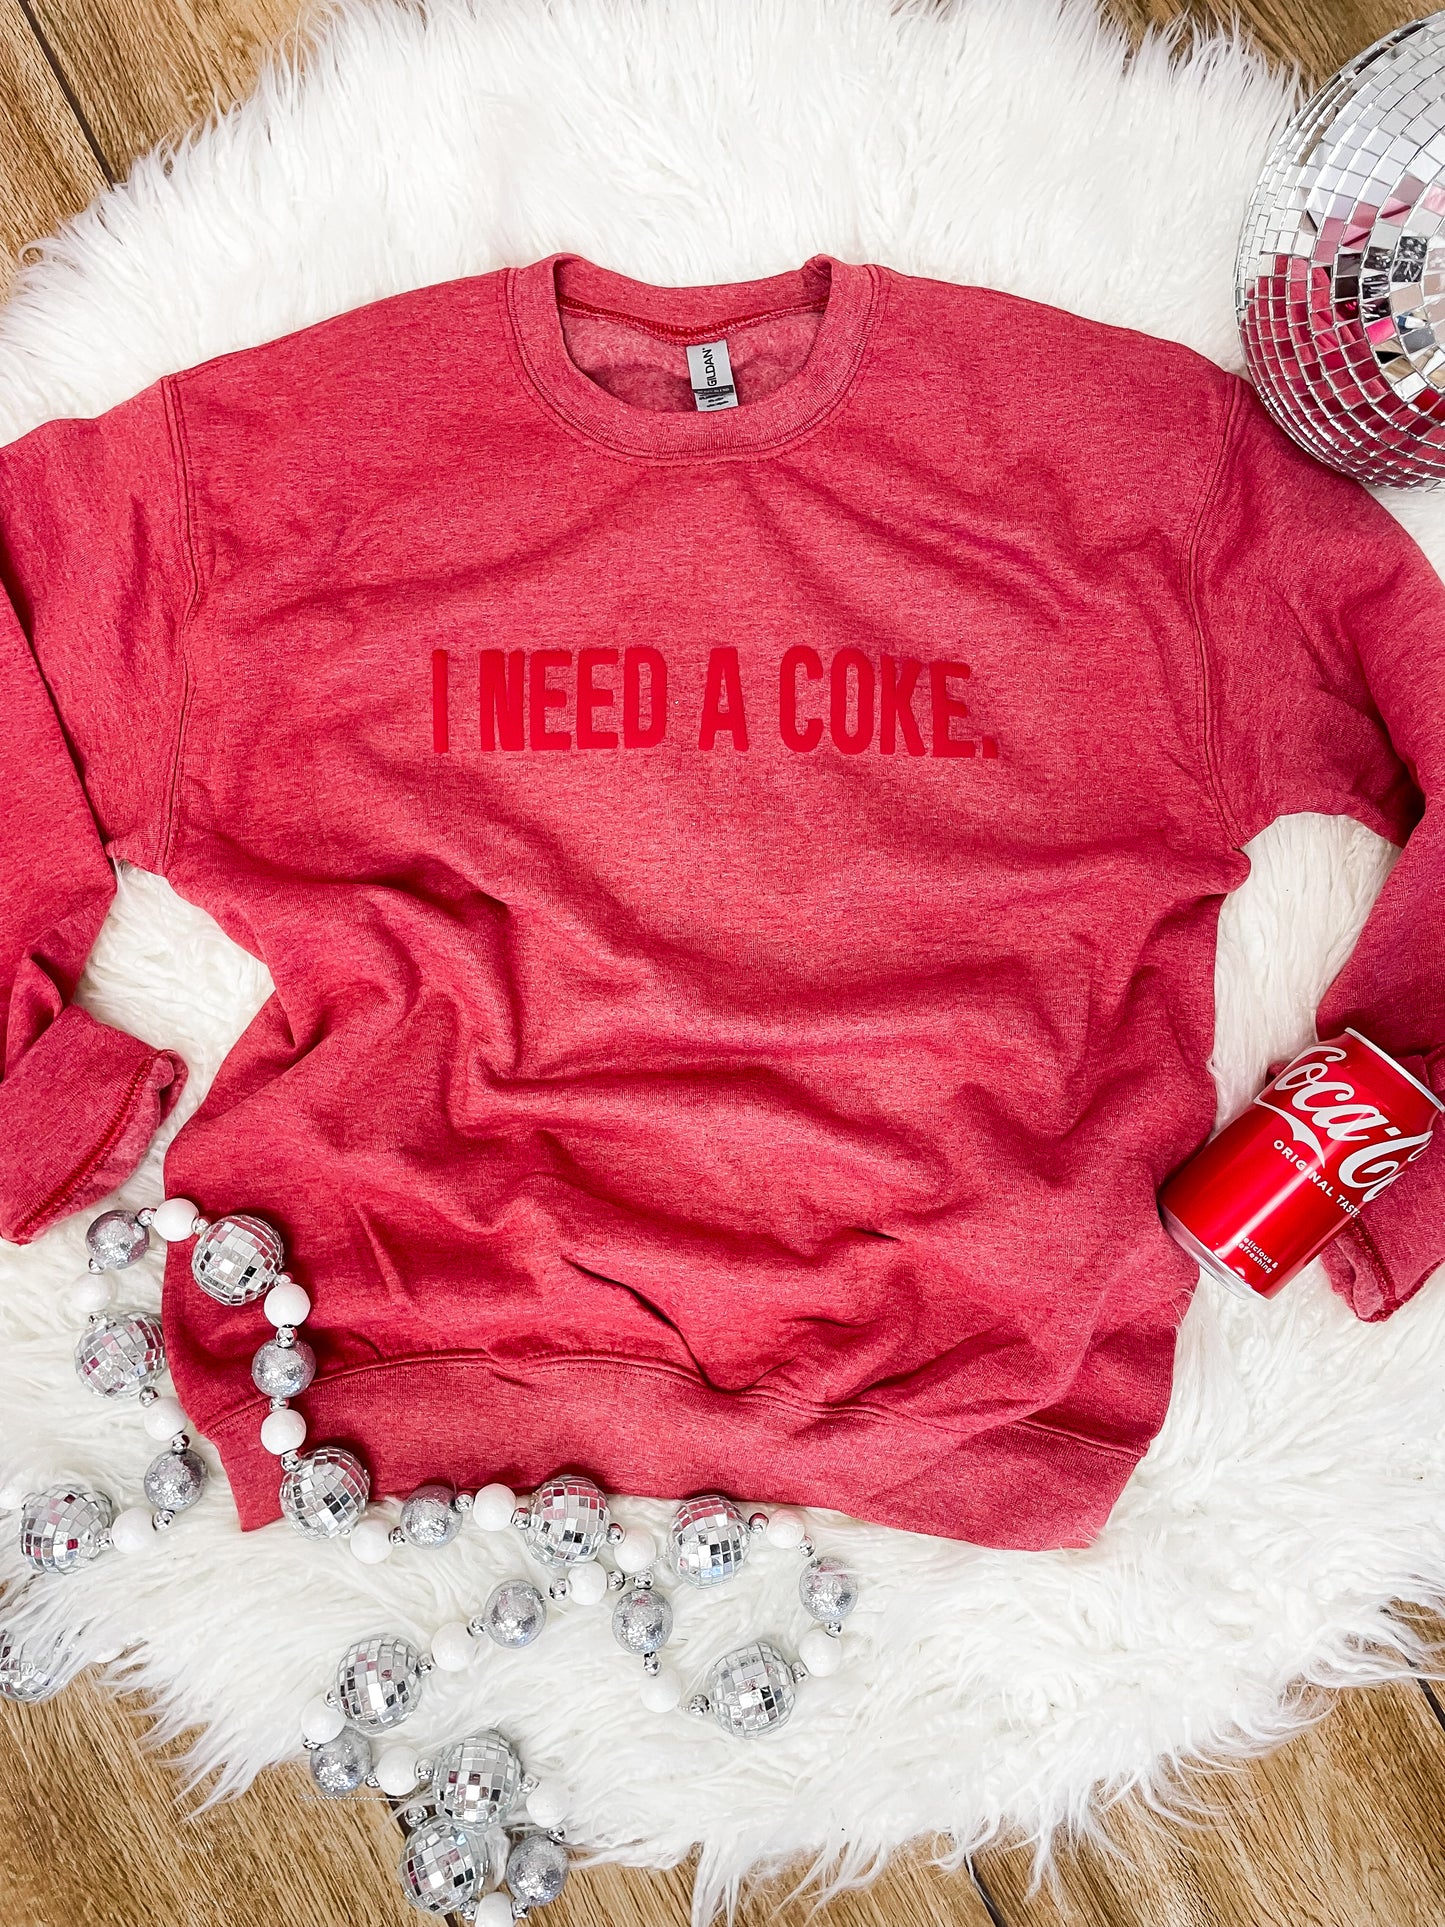 I Need a Coke Sweatshirt